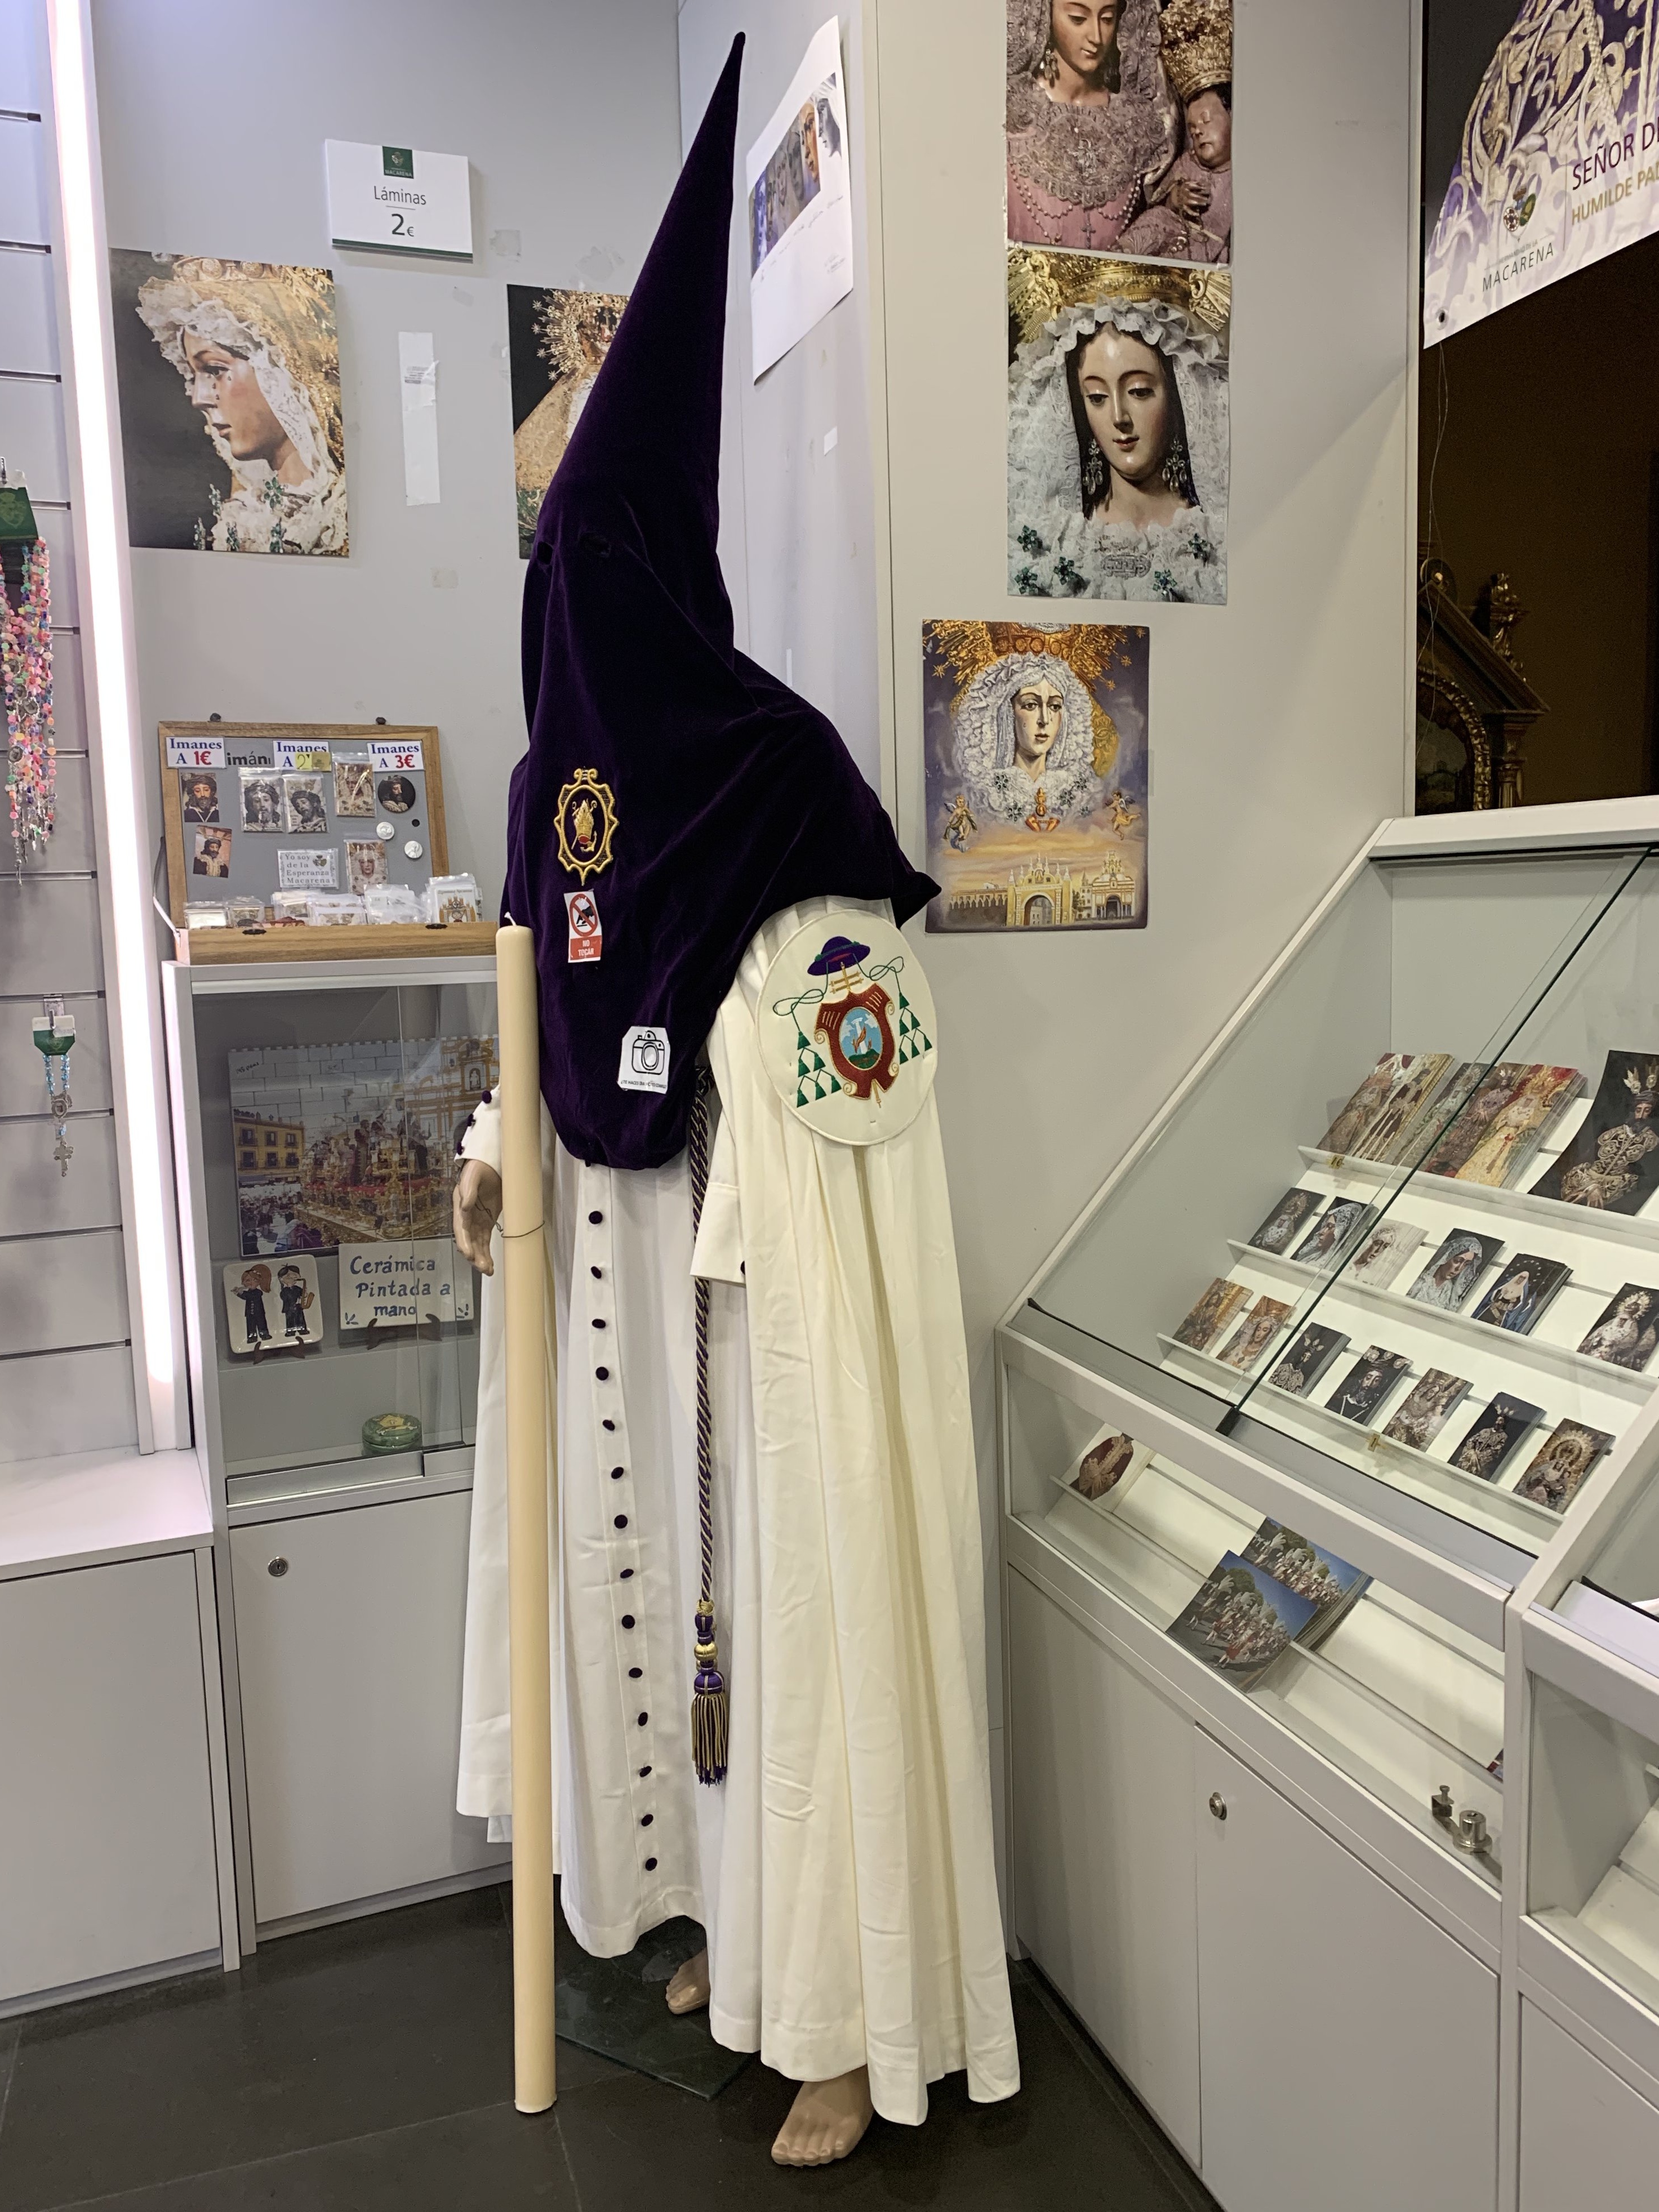 Obchod pri Bazilike - oblek lena bratstva Macarena pri procesich